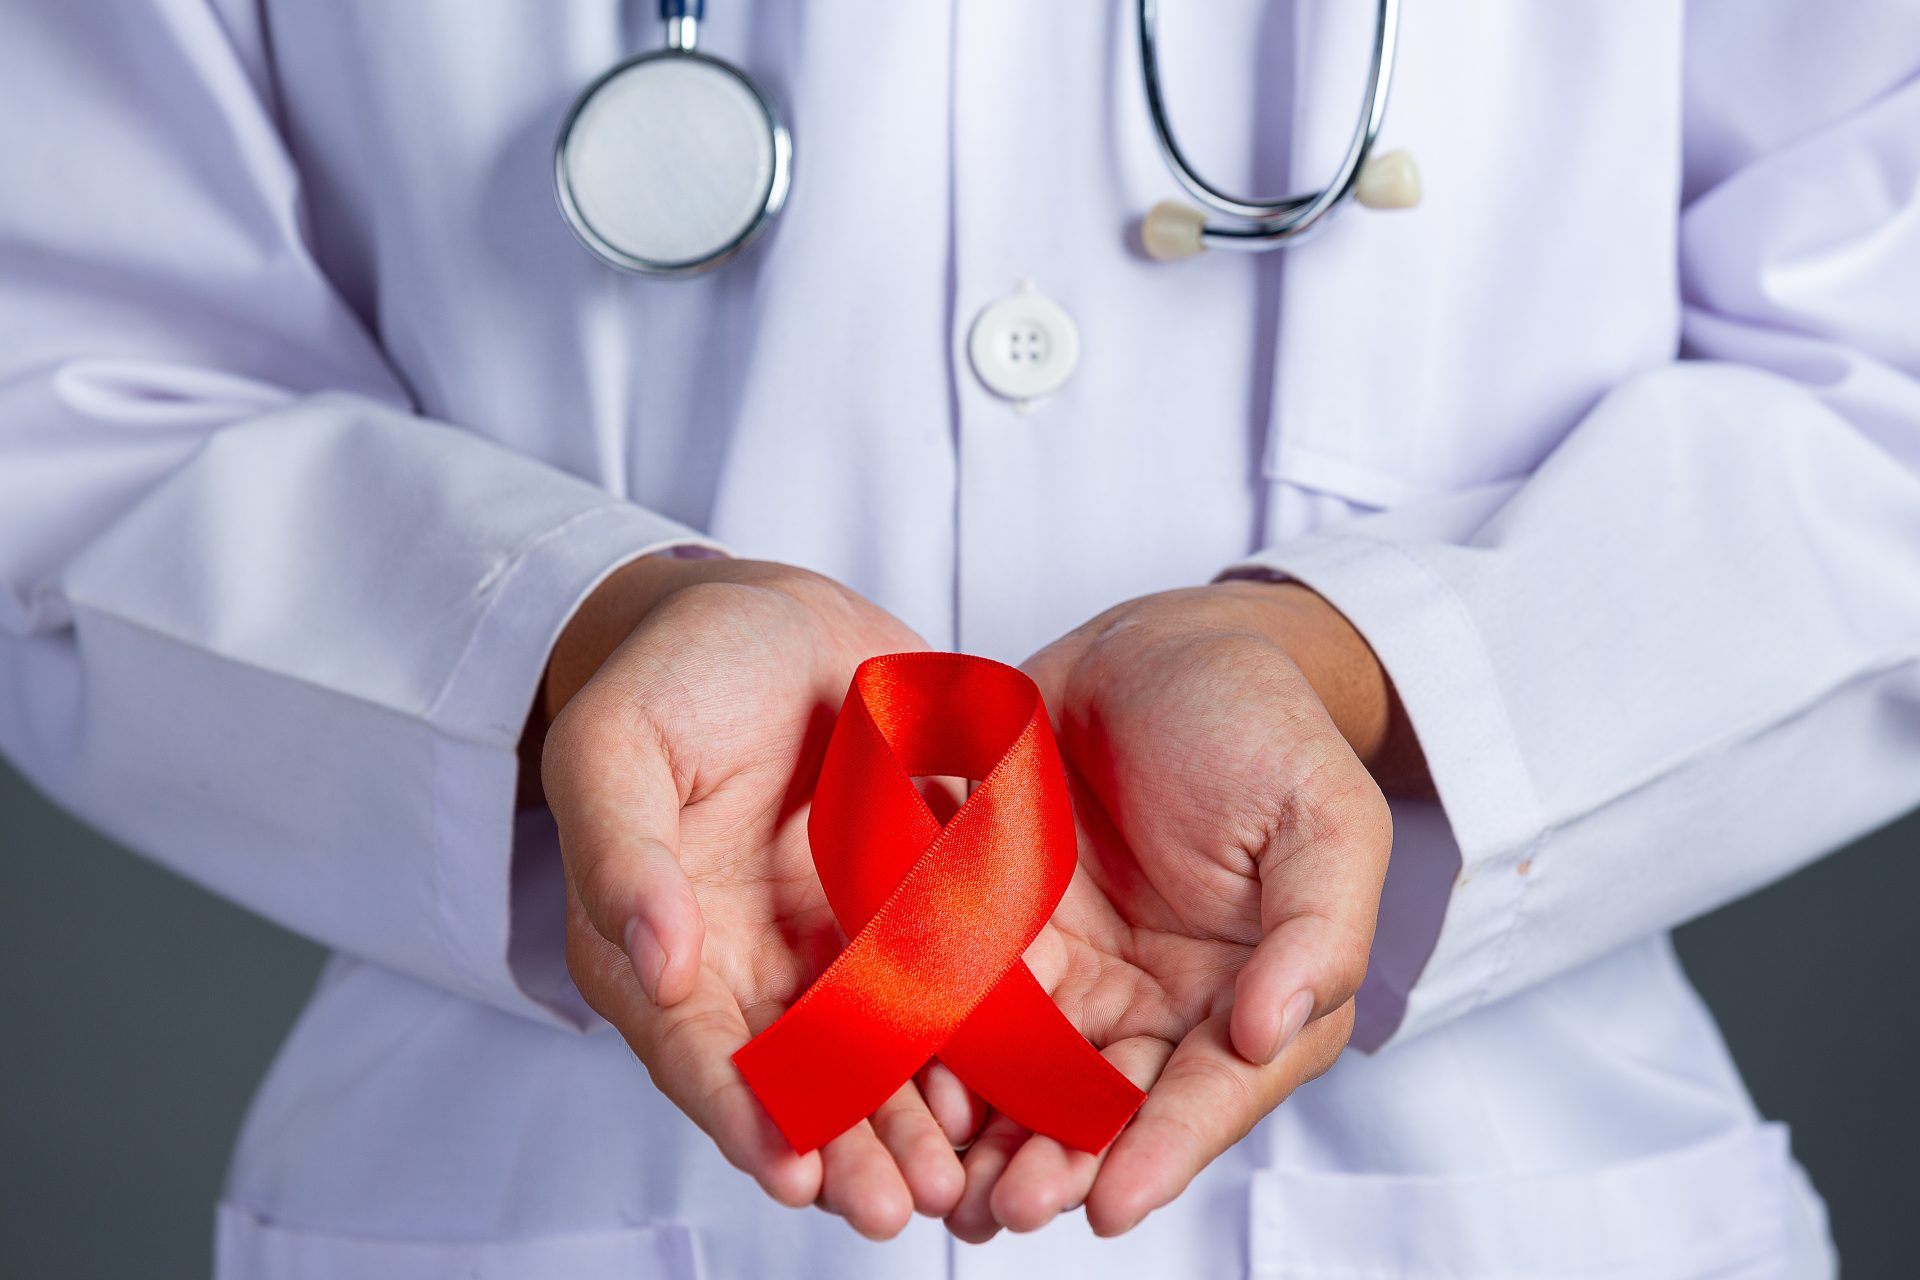 Estima-se que, atualmente, um milhão de pessoas vivam com HIV no Brasil